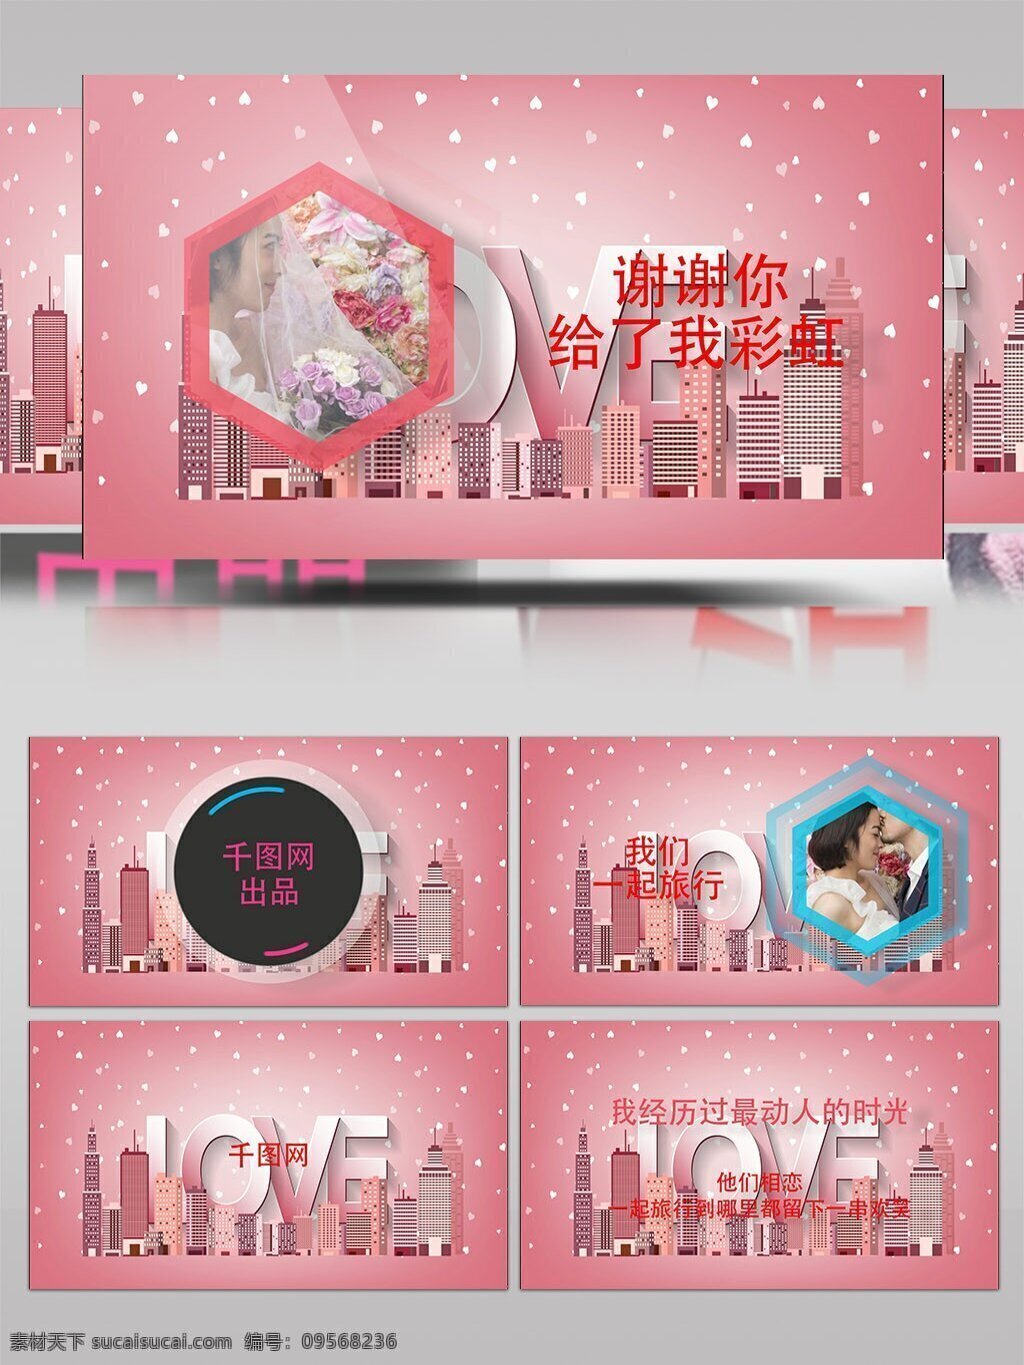 粉色 浪漫 动画 婚庆 开场 视频 ae 模板 清新 婚礼 图像 展示 爱情 情侣